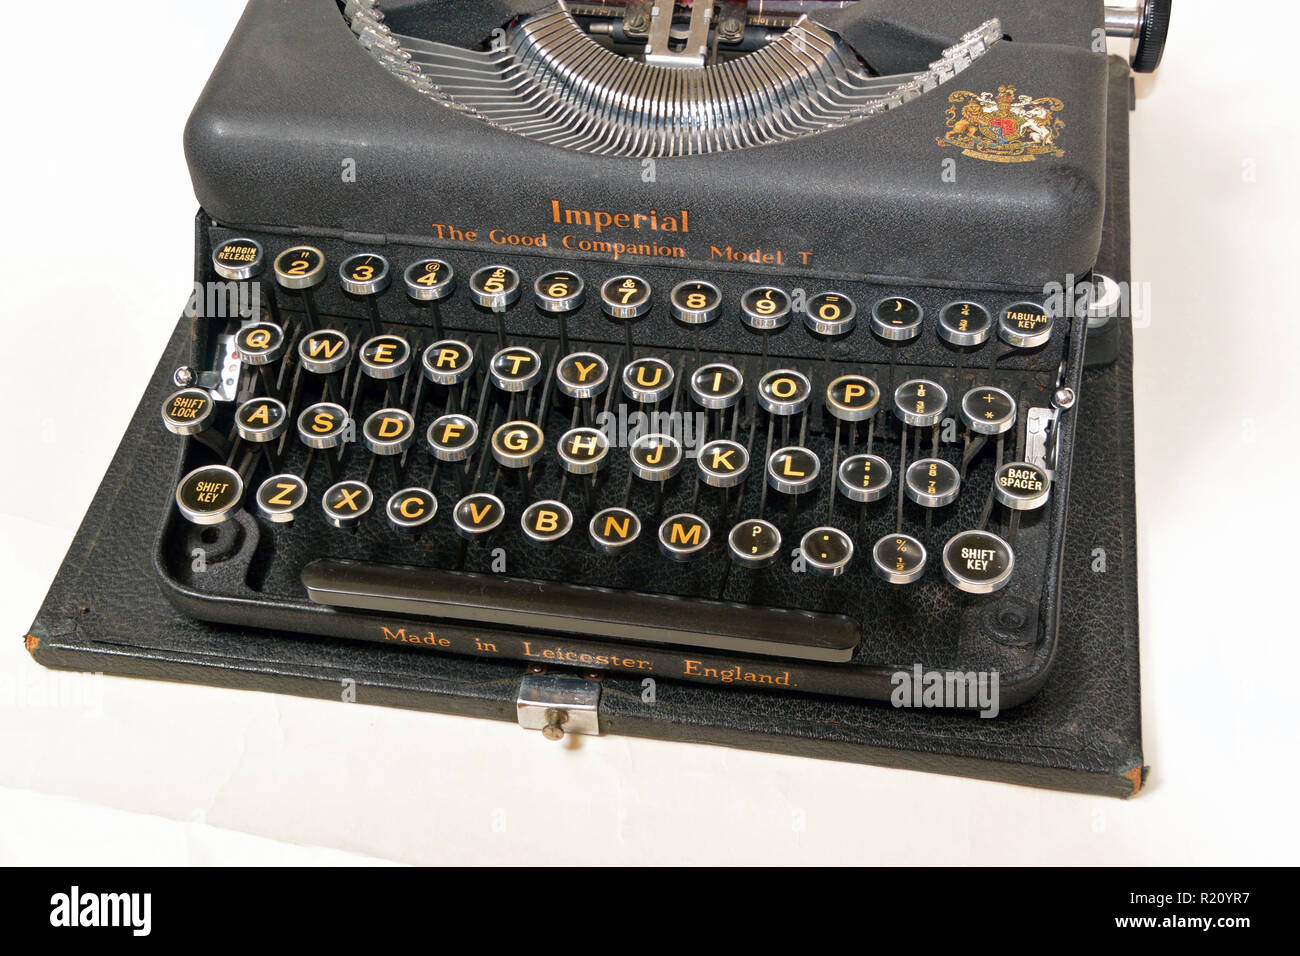 Imperial Die guten Begleiter Modell T tragbare Schreibmaschine, 1941 Vintage Stockfoto